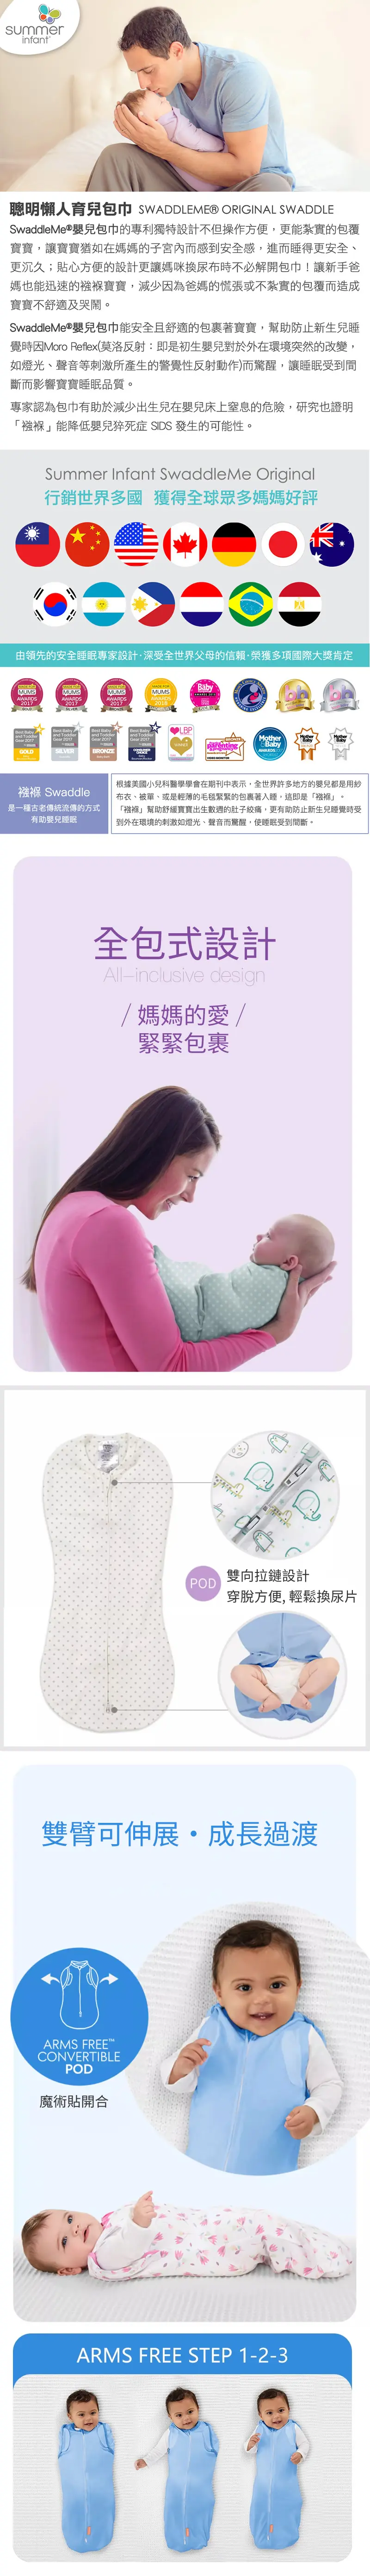 Summer Infant SwaddleMe Pod 婴儿包巾(可转换型)